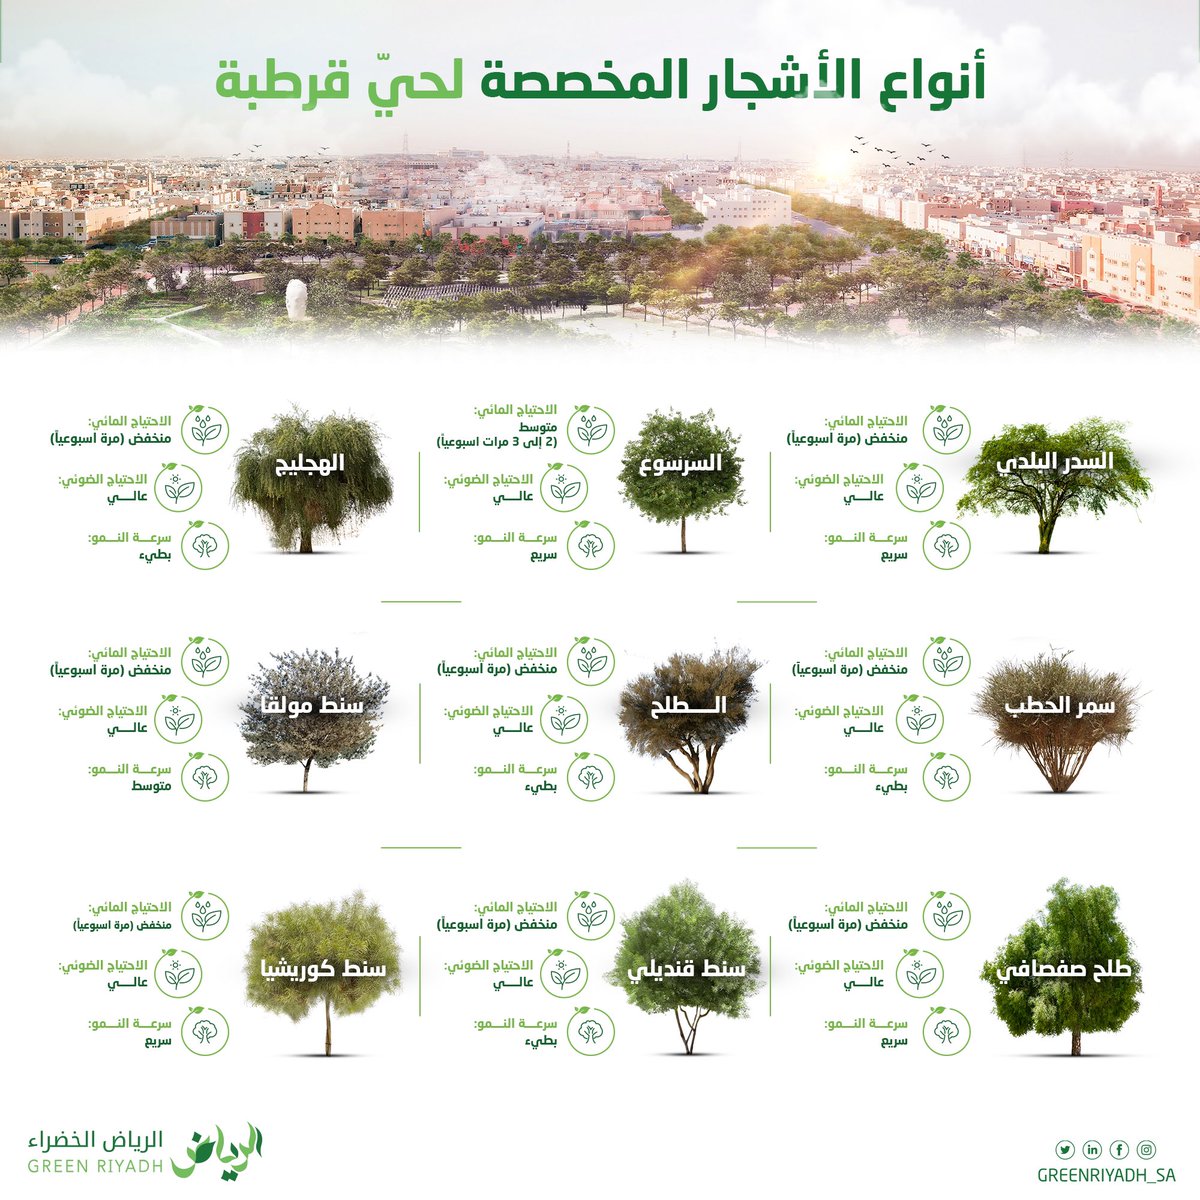 أبرز أشجار حيّ #قرطبة 
#الرياض_الخضراء